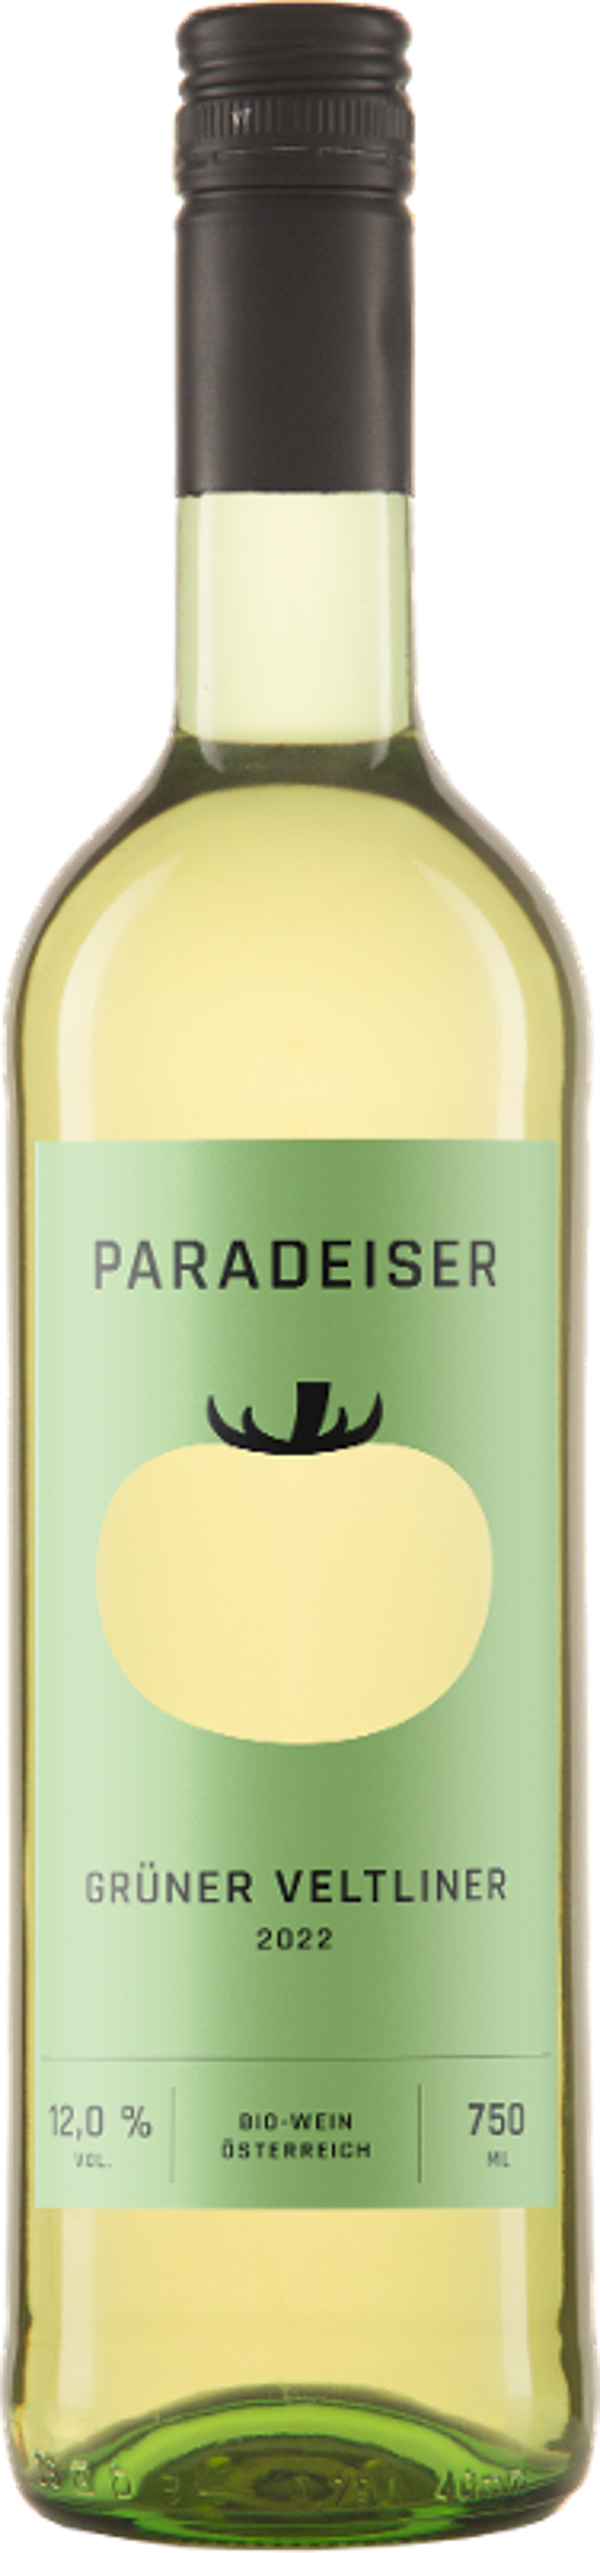 Produktfoto zu Kiste Grüner Veltliner "Paradeiser" Qualitätswein 6*0,75l